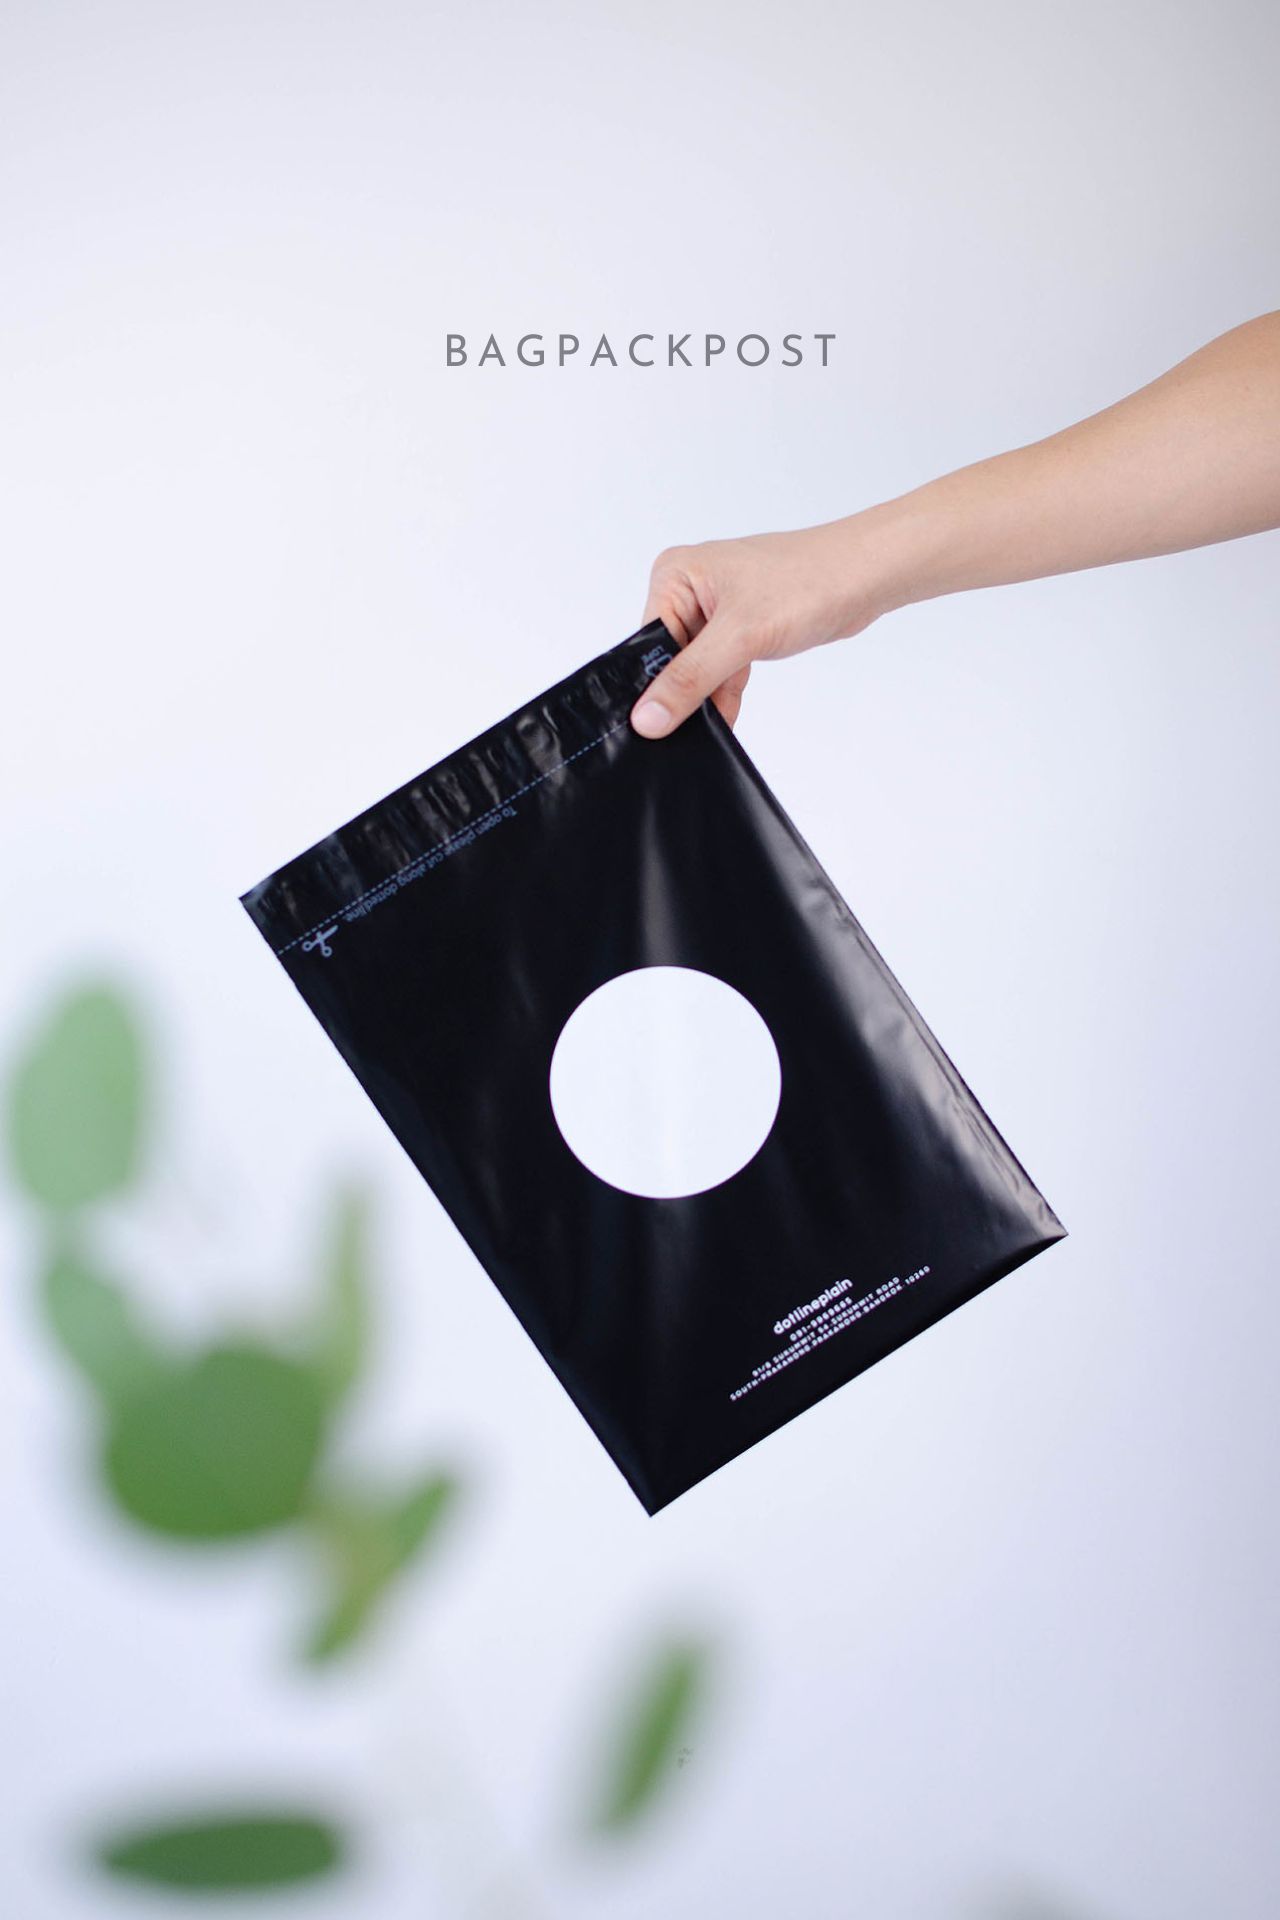 ผลิตถุงไปรษณีย์ ซองไปรษณีย์พิมพ์ลาย Dotlineplain ซองไปรษณีย์สีดำ ถุงไปรษณีย์พิมพ์ลาย 2 BagPackPost